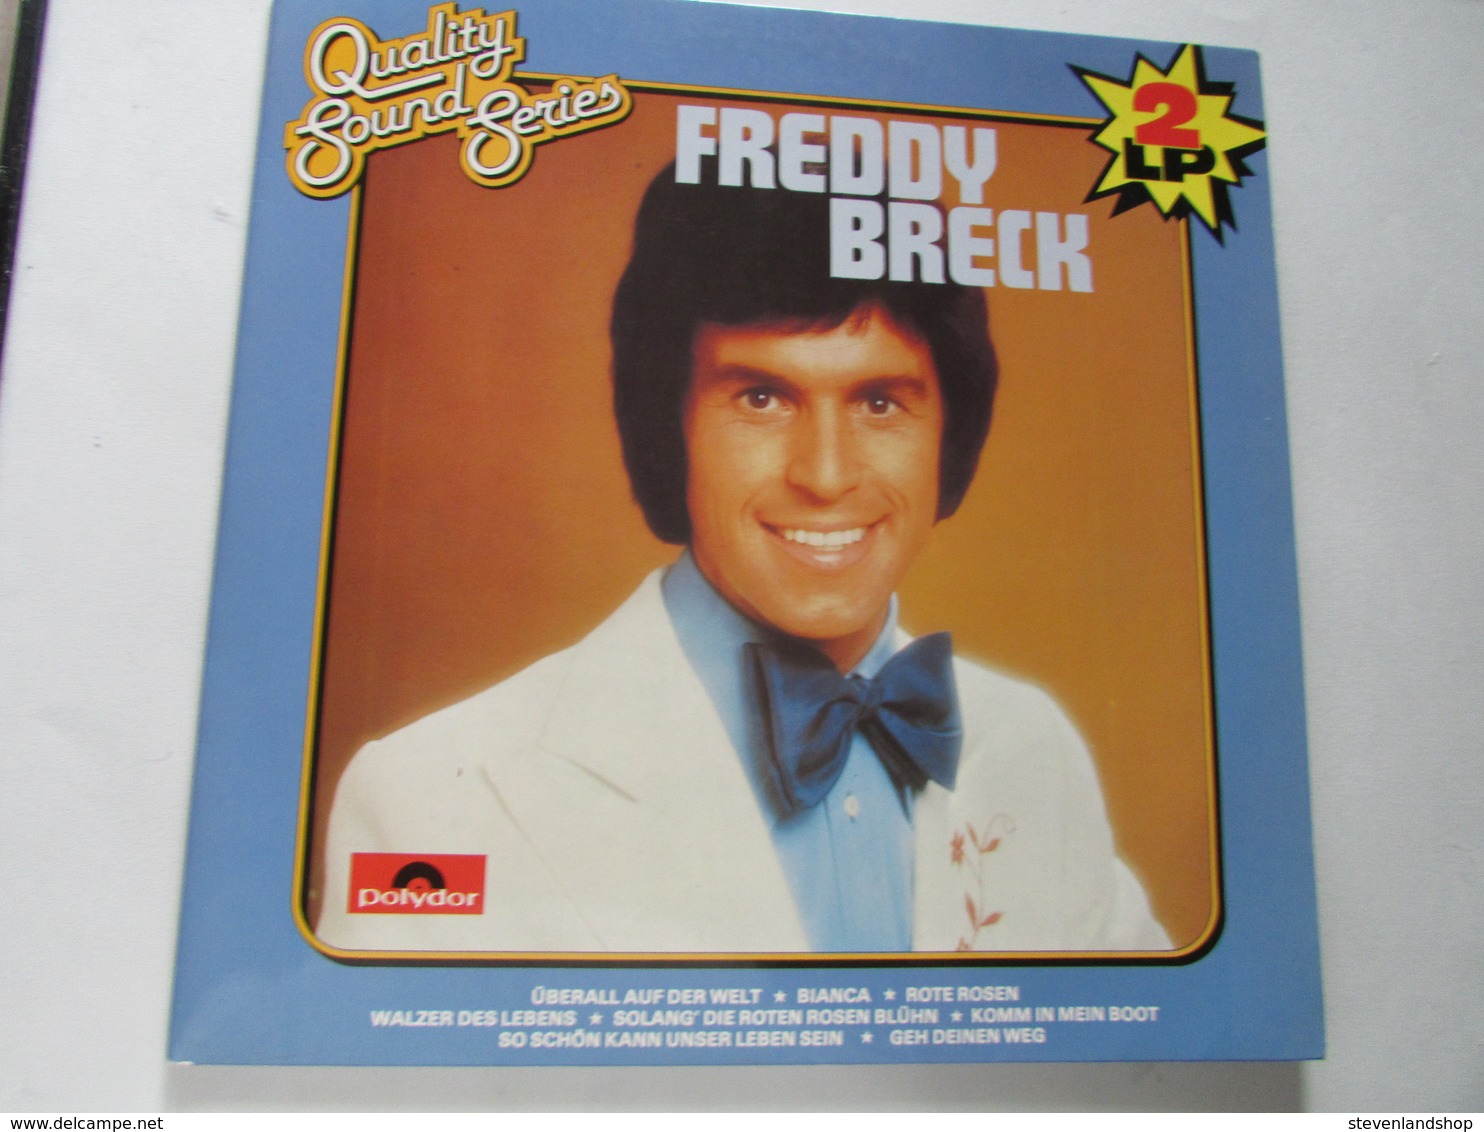 Freddy Breck, 2 LP 'S Quality Sound Series - Otros - Canción Alemana